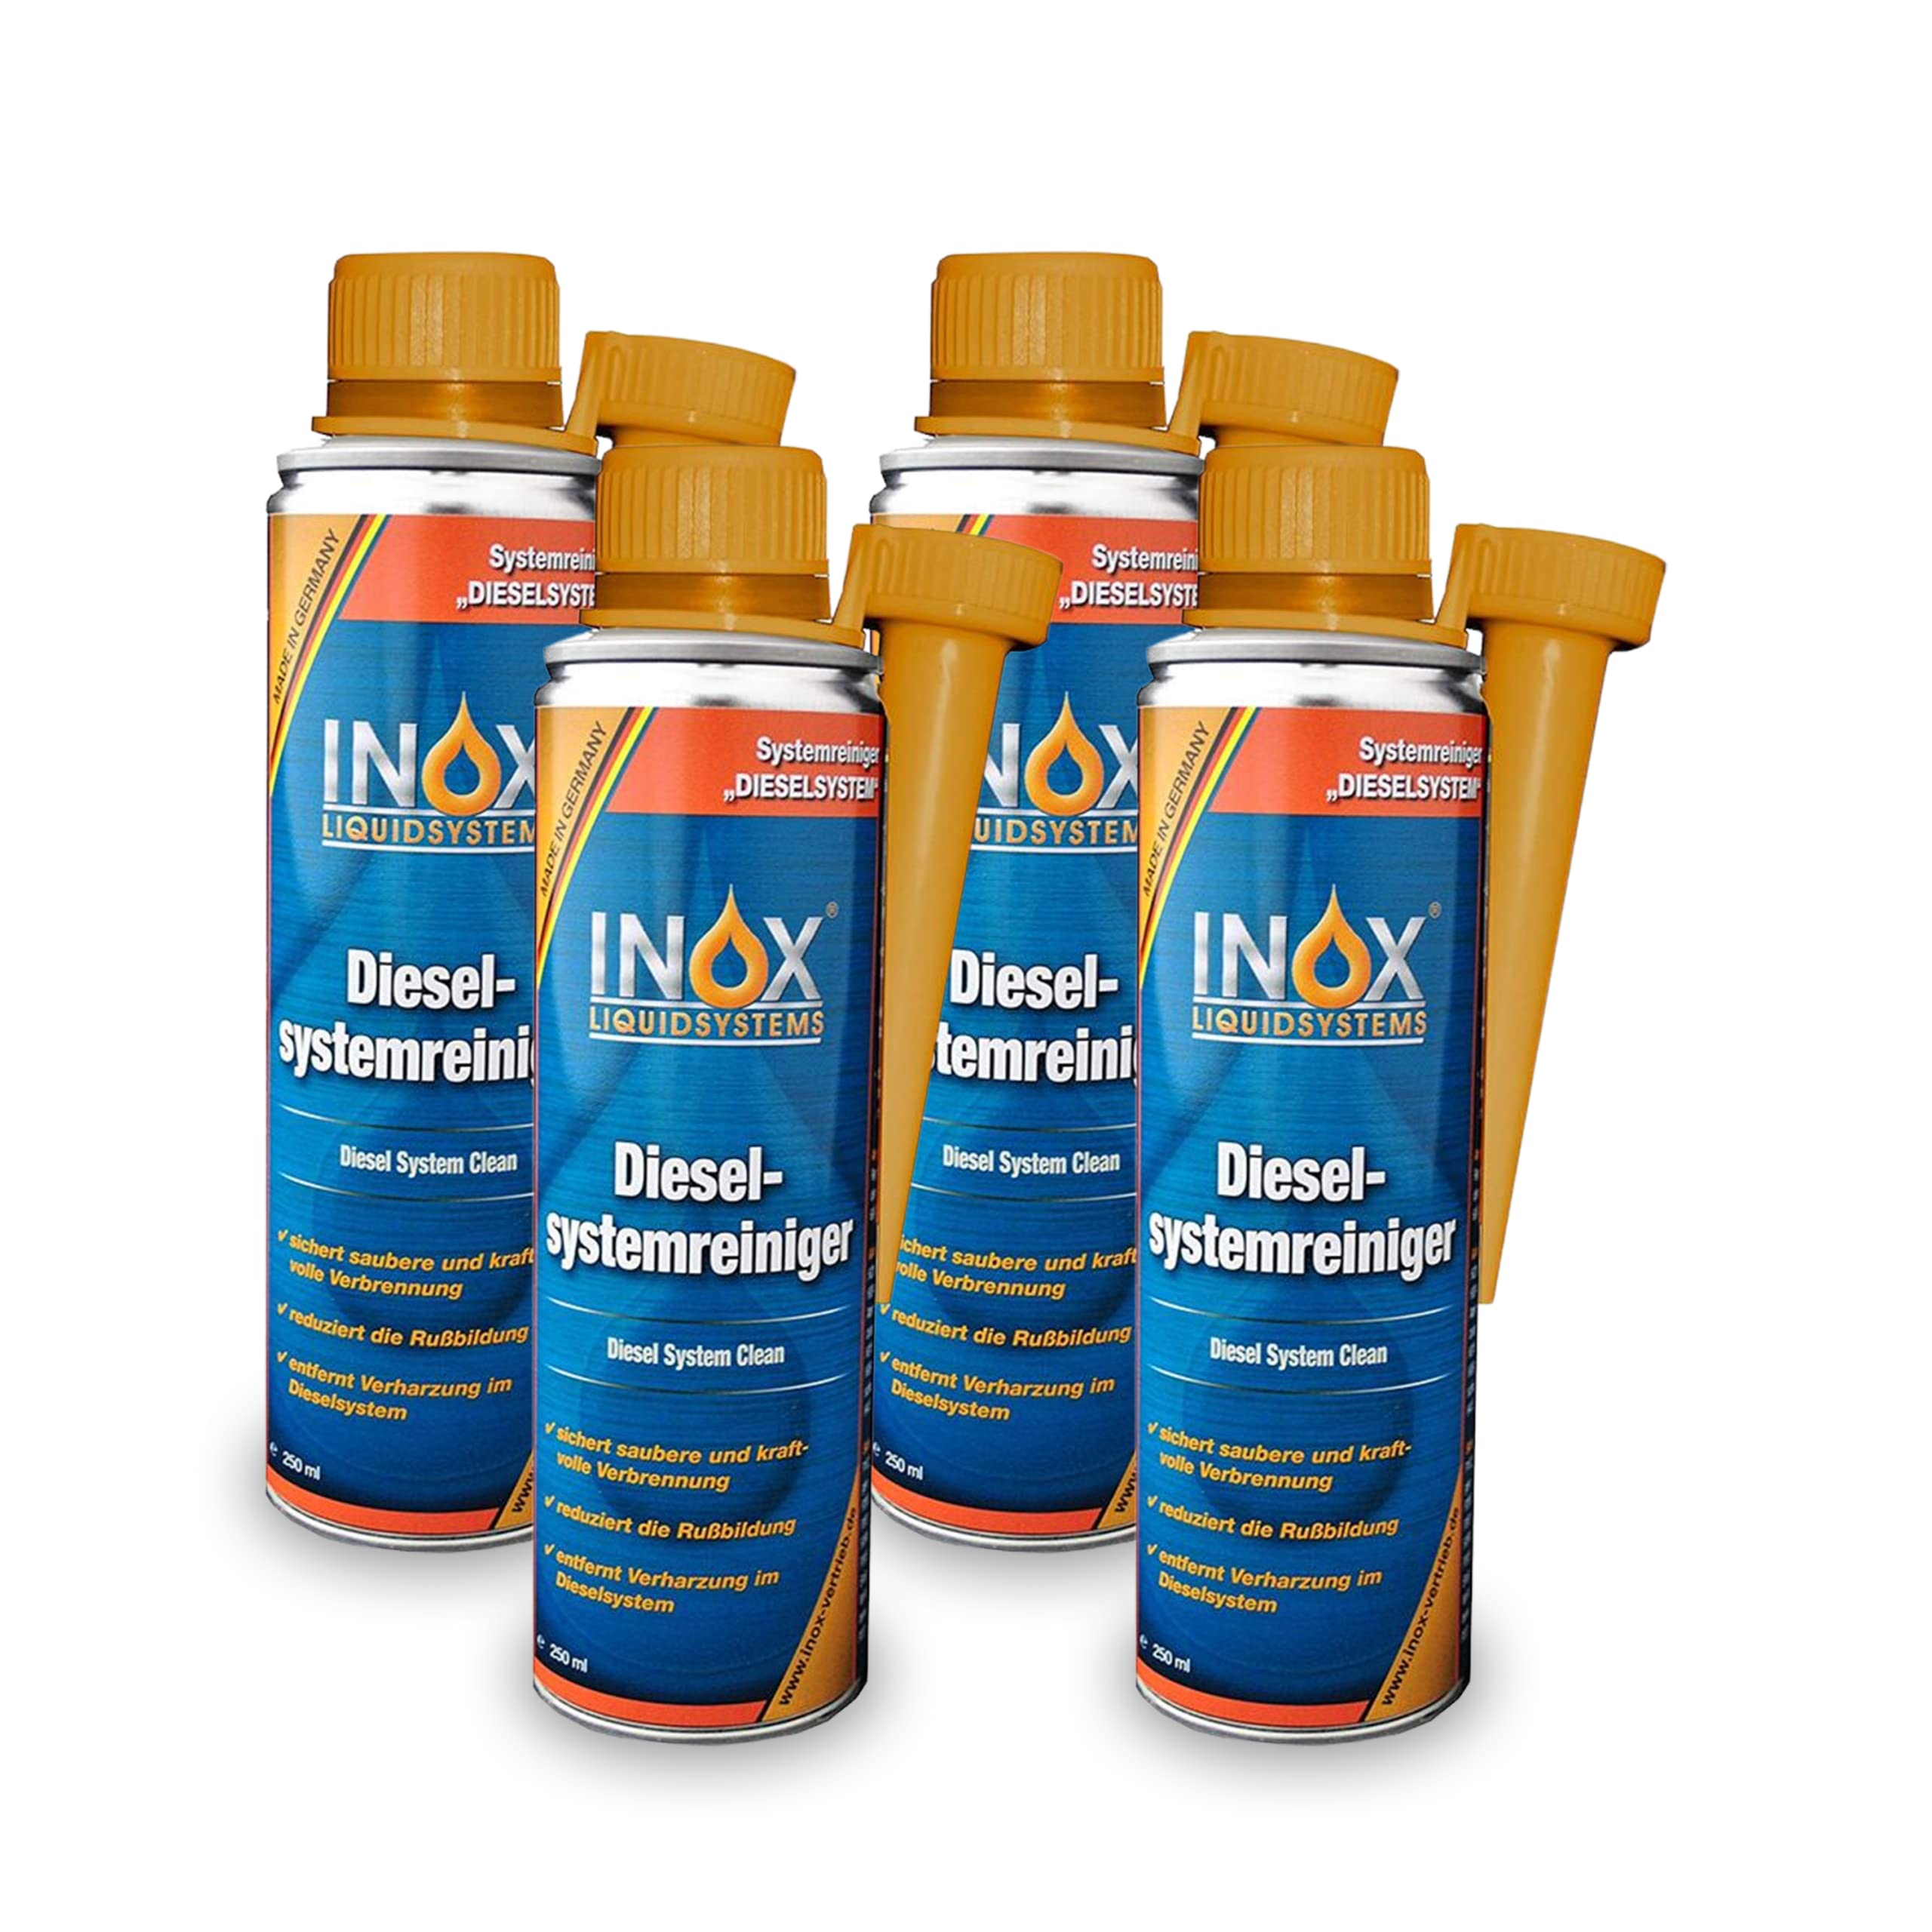 INOX® - Effektiver Diesel Systemreiniger Additiv, 4 x 250ml | Diesel Zusatz für Dieselmotoren | Löst Verschmutzung & Verharzung im Dieselsystem | Effiziente Verbrennung